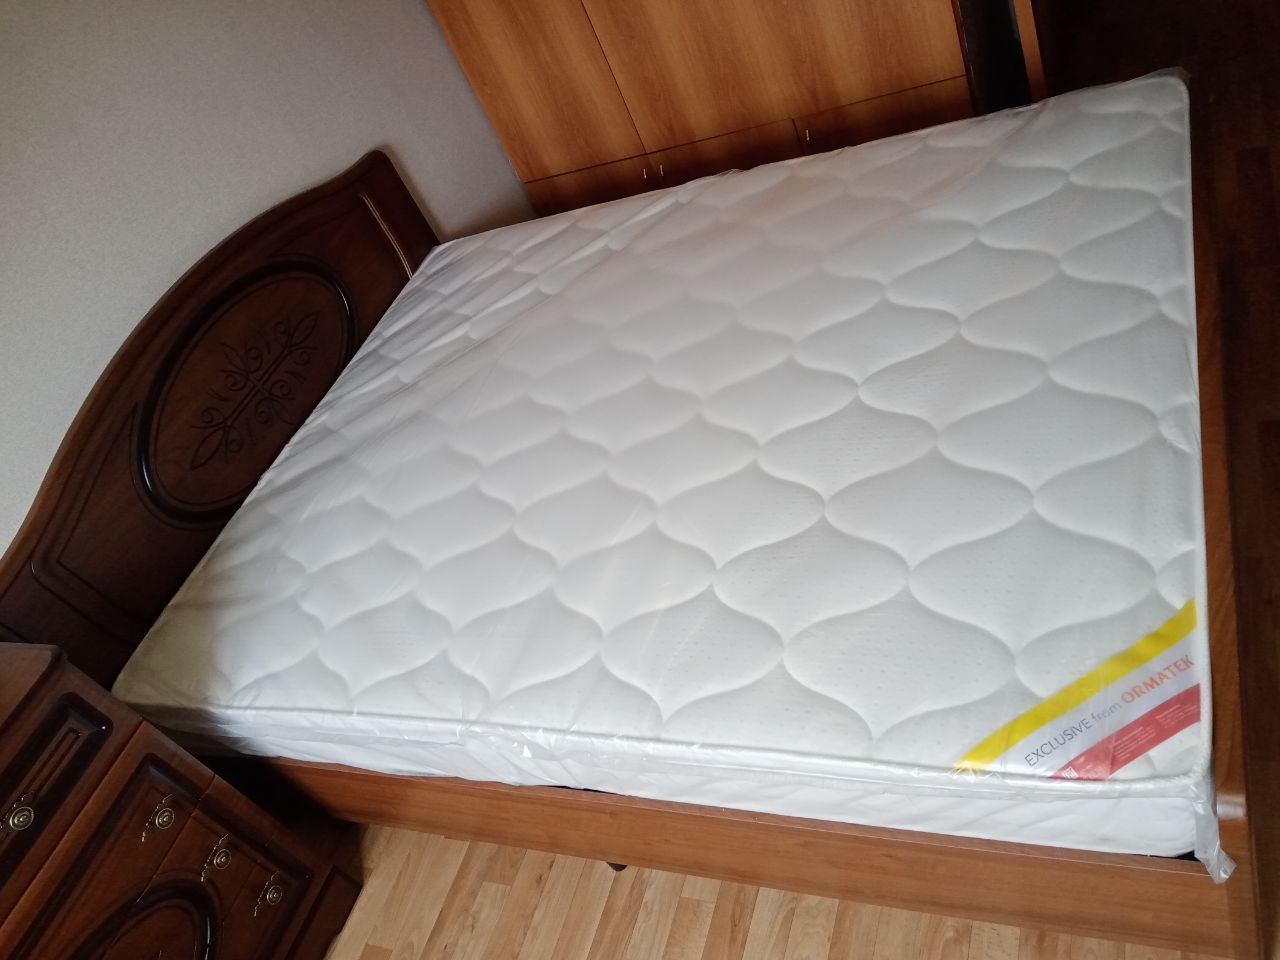 Двуспальная кровать "Натали" 160х190 с подъемным механизмом цвет клен/ясень бежевый изножье высокое